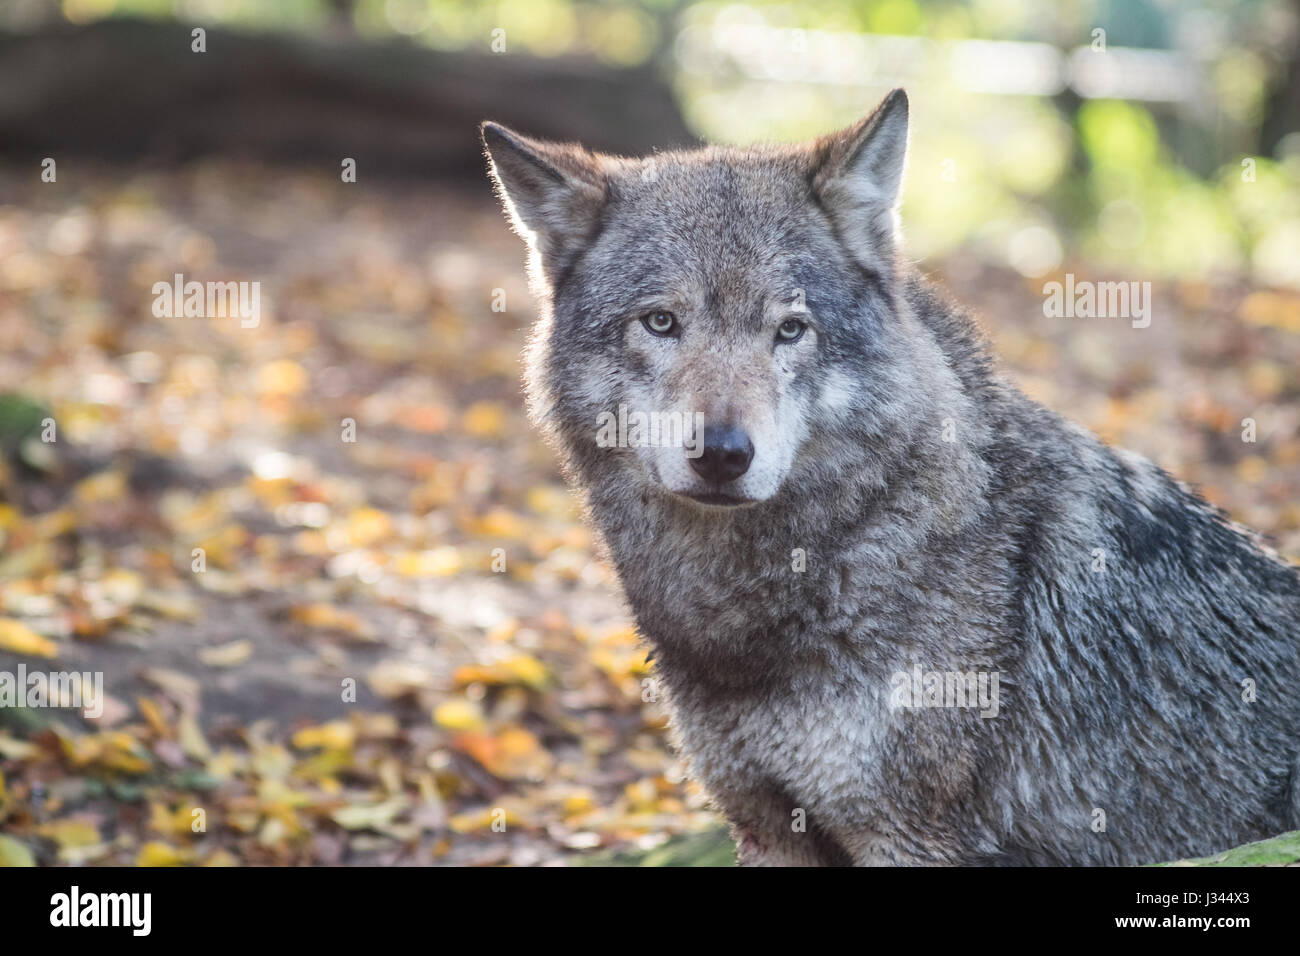 Europäischer Wolf Canis Lupus Lupus ich Blijdorp Zoo in Rotterdam, Niederlande. Schuss mit einigen Gegenlicht Hervorhebung schönes graues Fell. Stockfoto